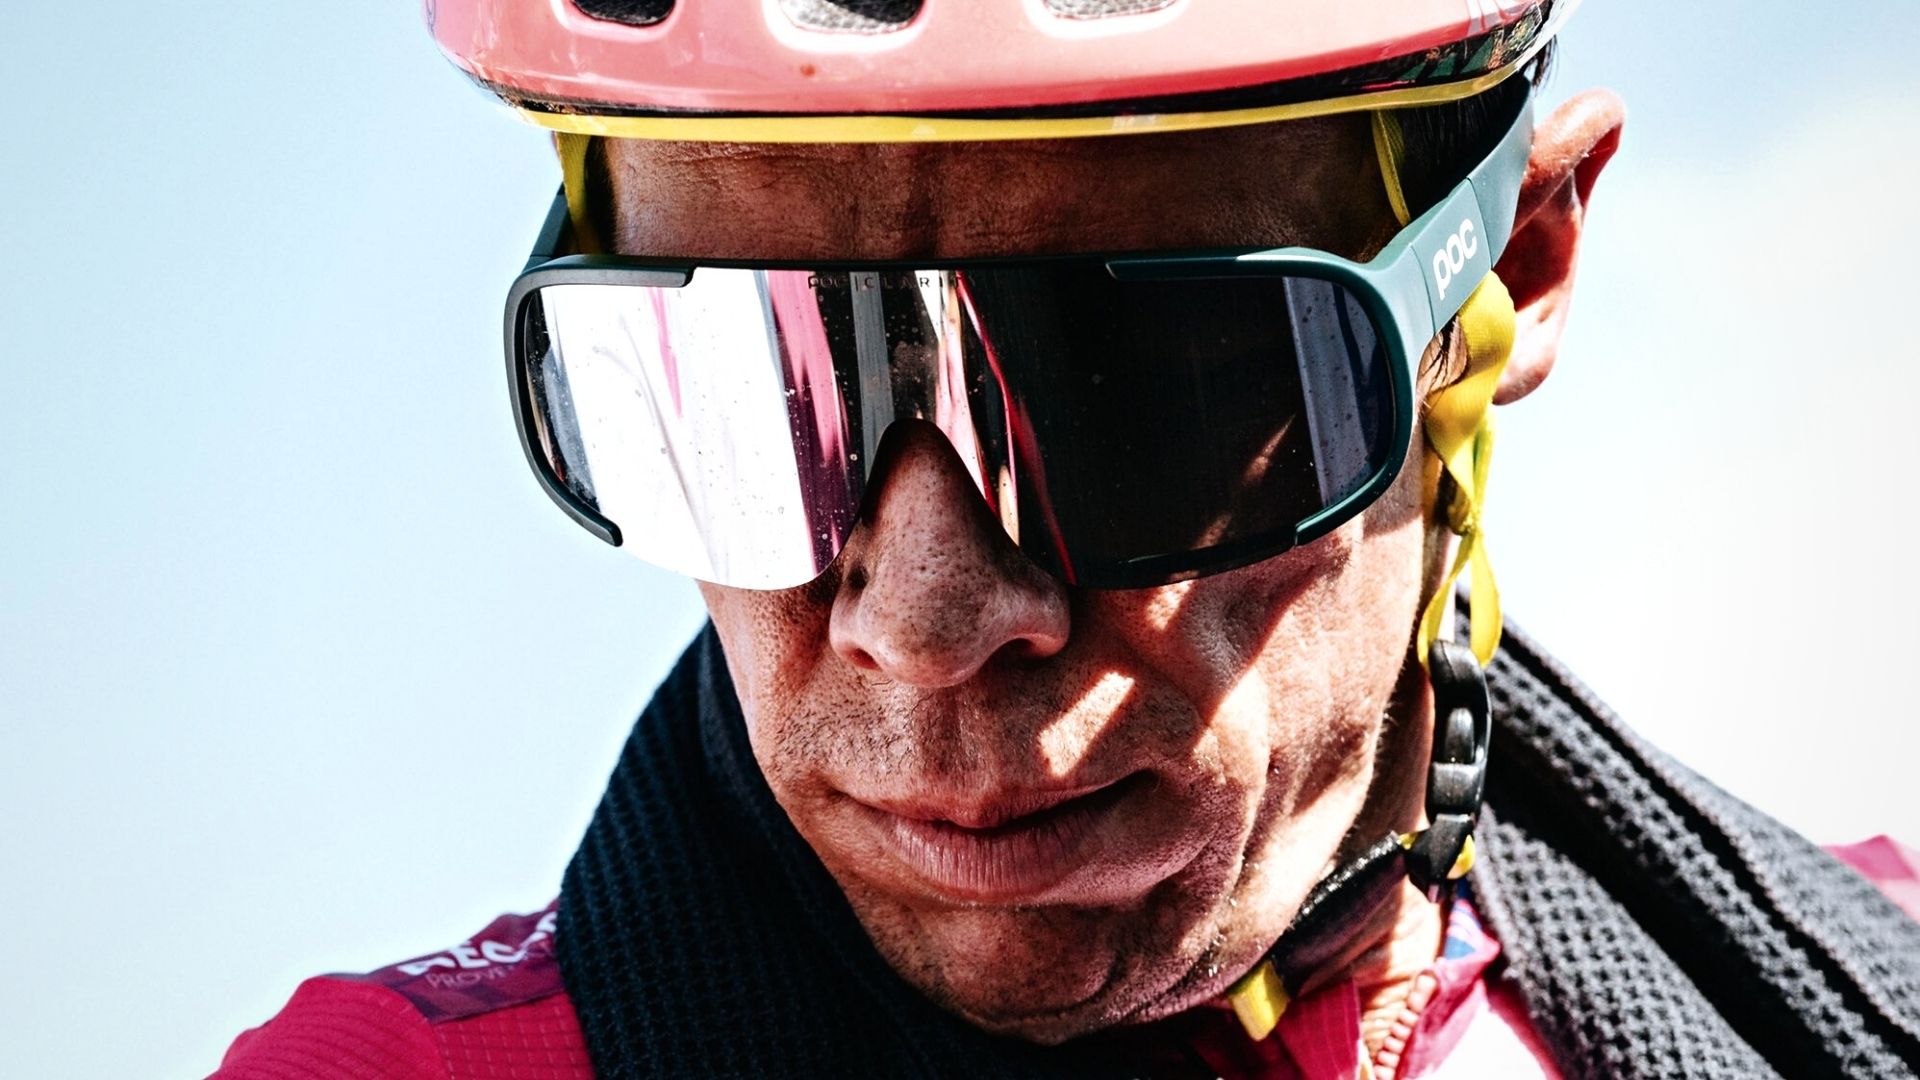 Los millones que dejó de ganar Rigoberto Urán tras abandonar el Giro de Italia